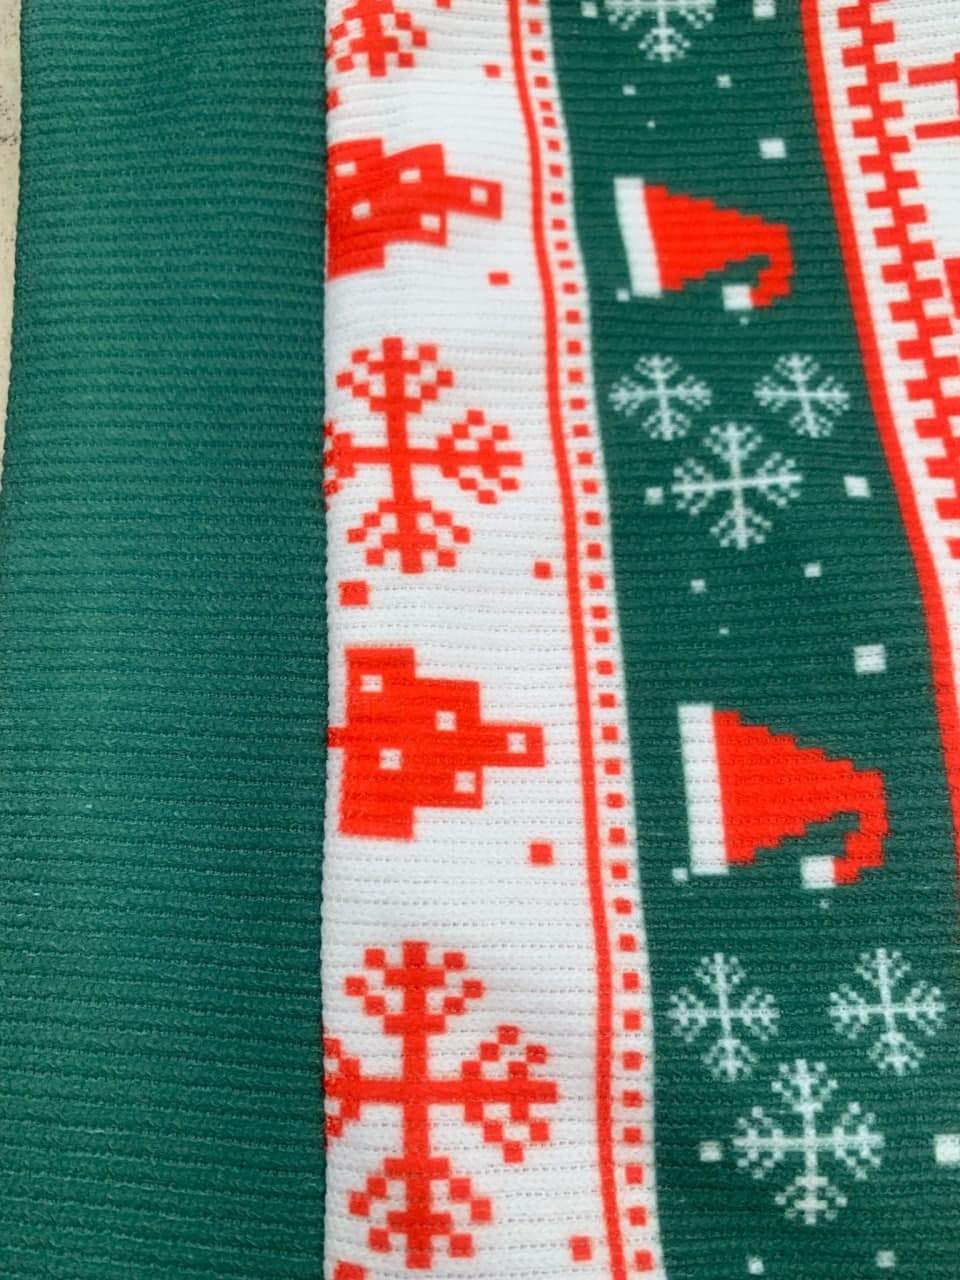 Vegeta Anime Ugly Christmas Sweater Dragon Ball Z Xmas Gift